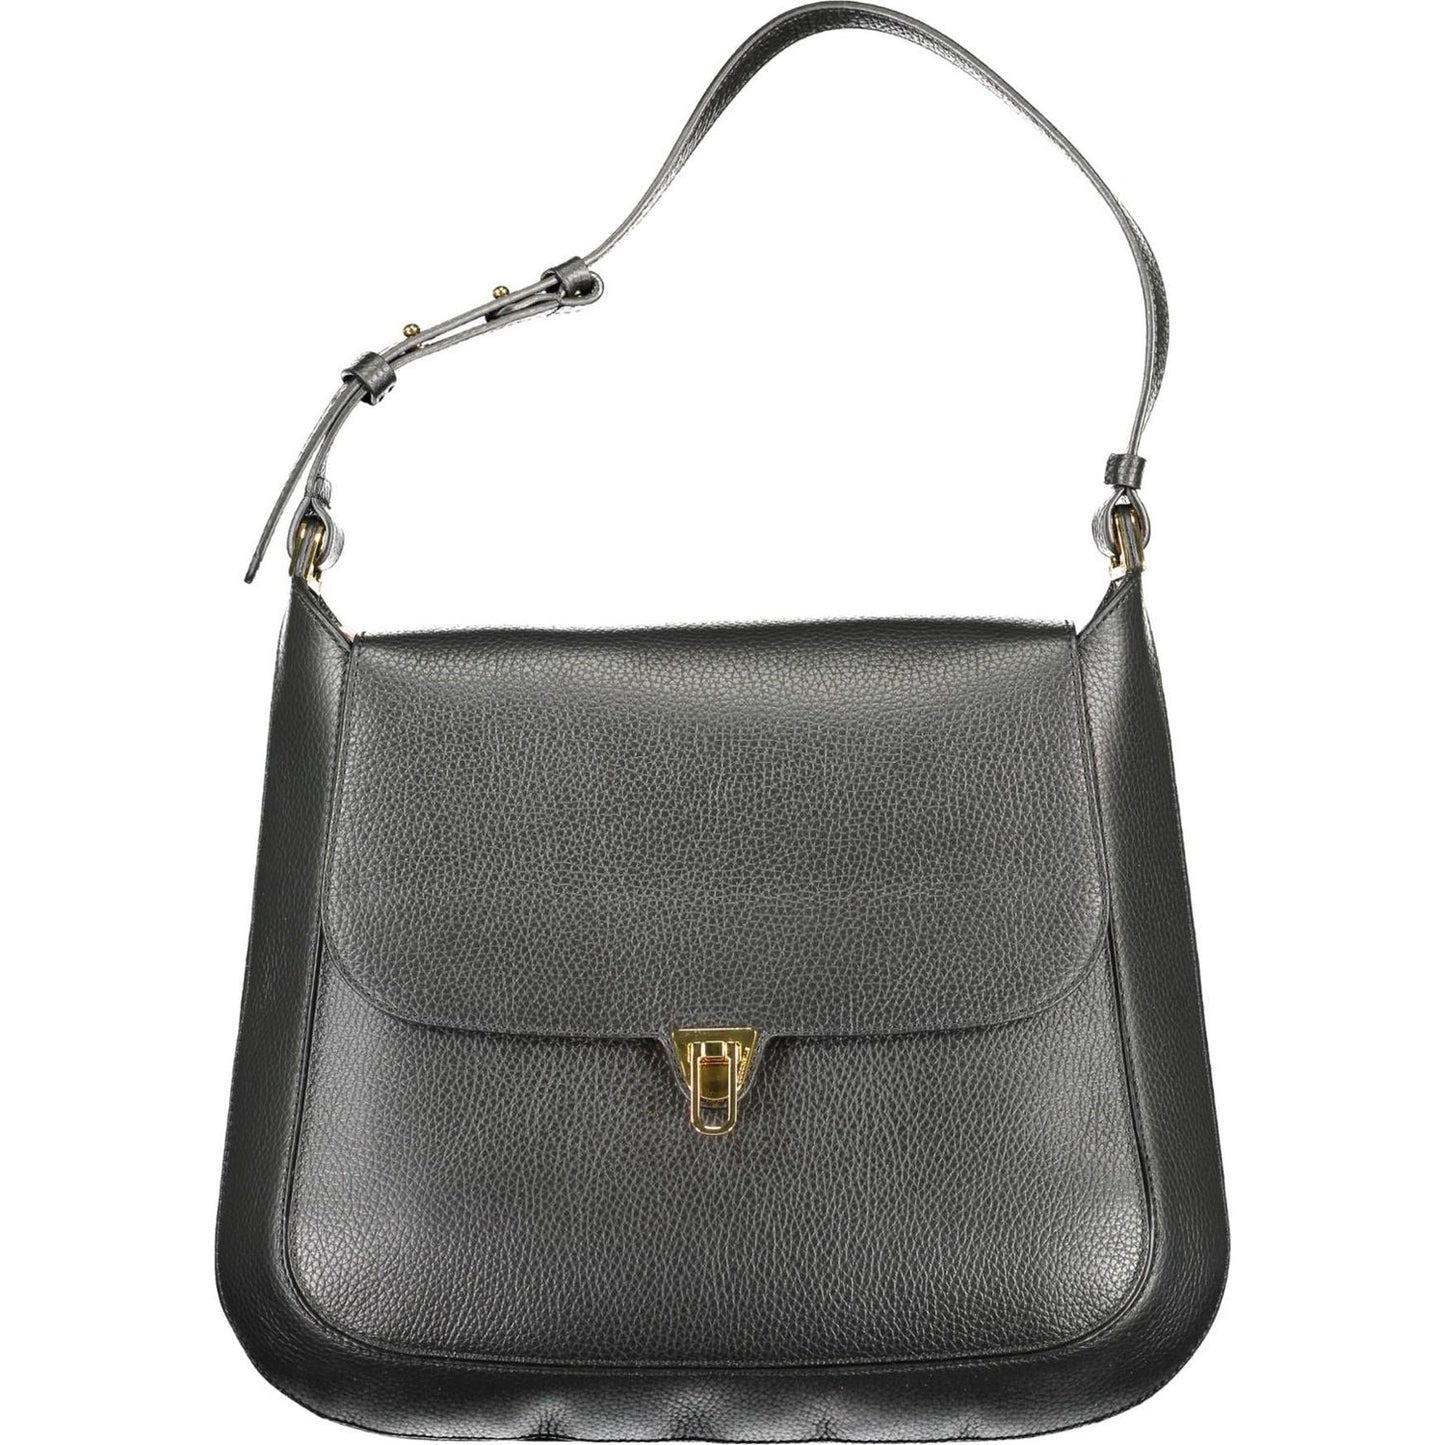 Coccinelle Elegant Leather Shoulder Bag with Turn Lock Closure elegant-leather-shoulder-bag-with-turn-lock-closure